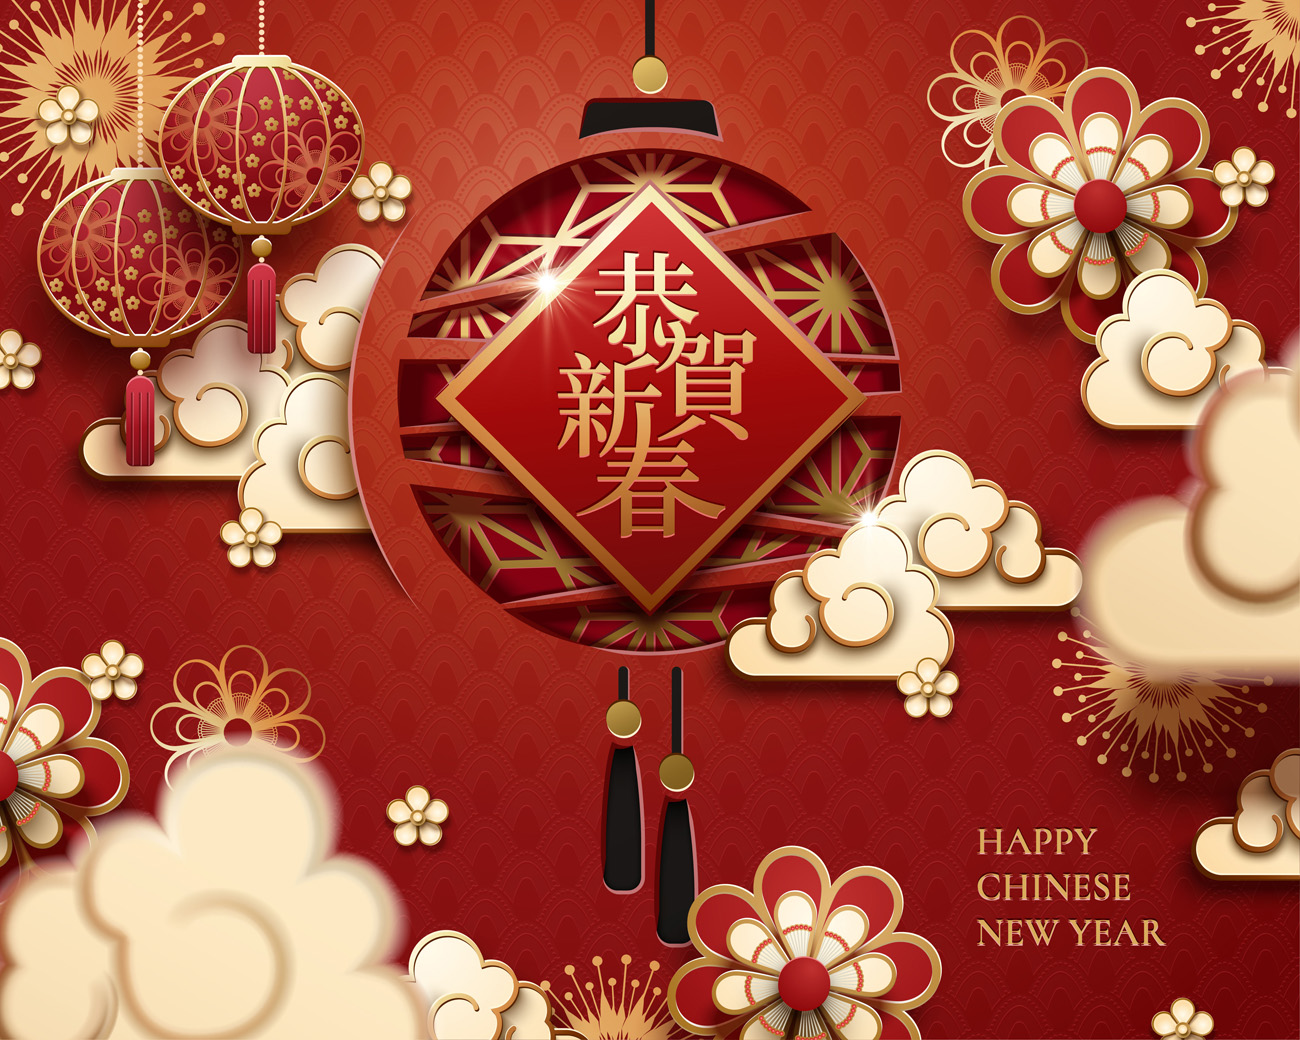 纸艺中悬挂的灯笼和祥云农历新年快乐中国风元素新年传统横幅海报